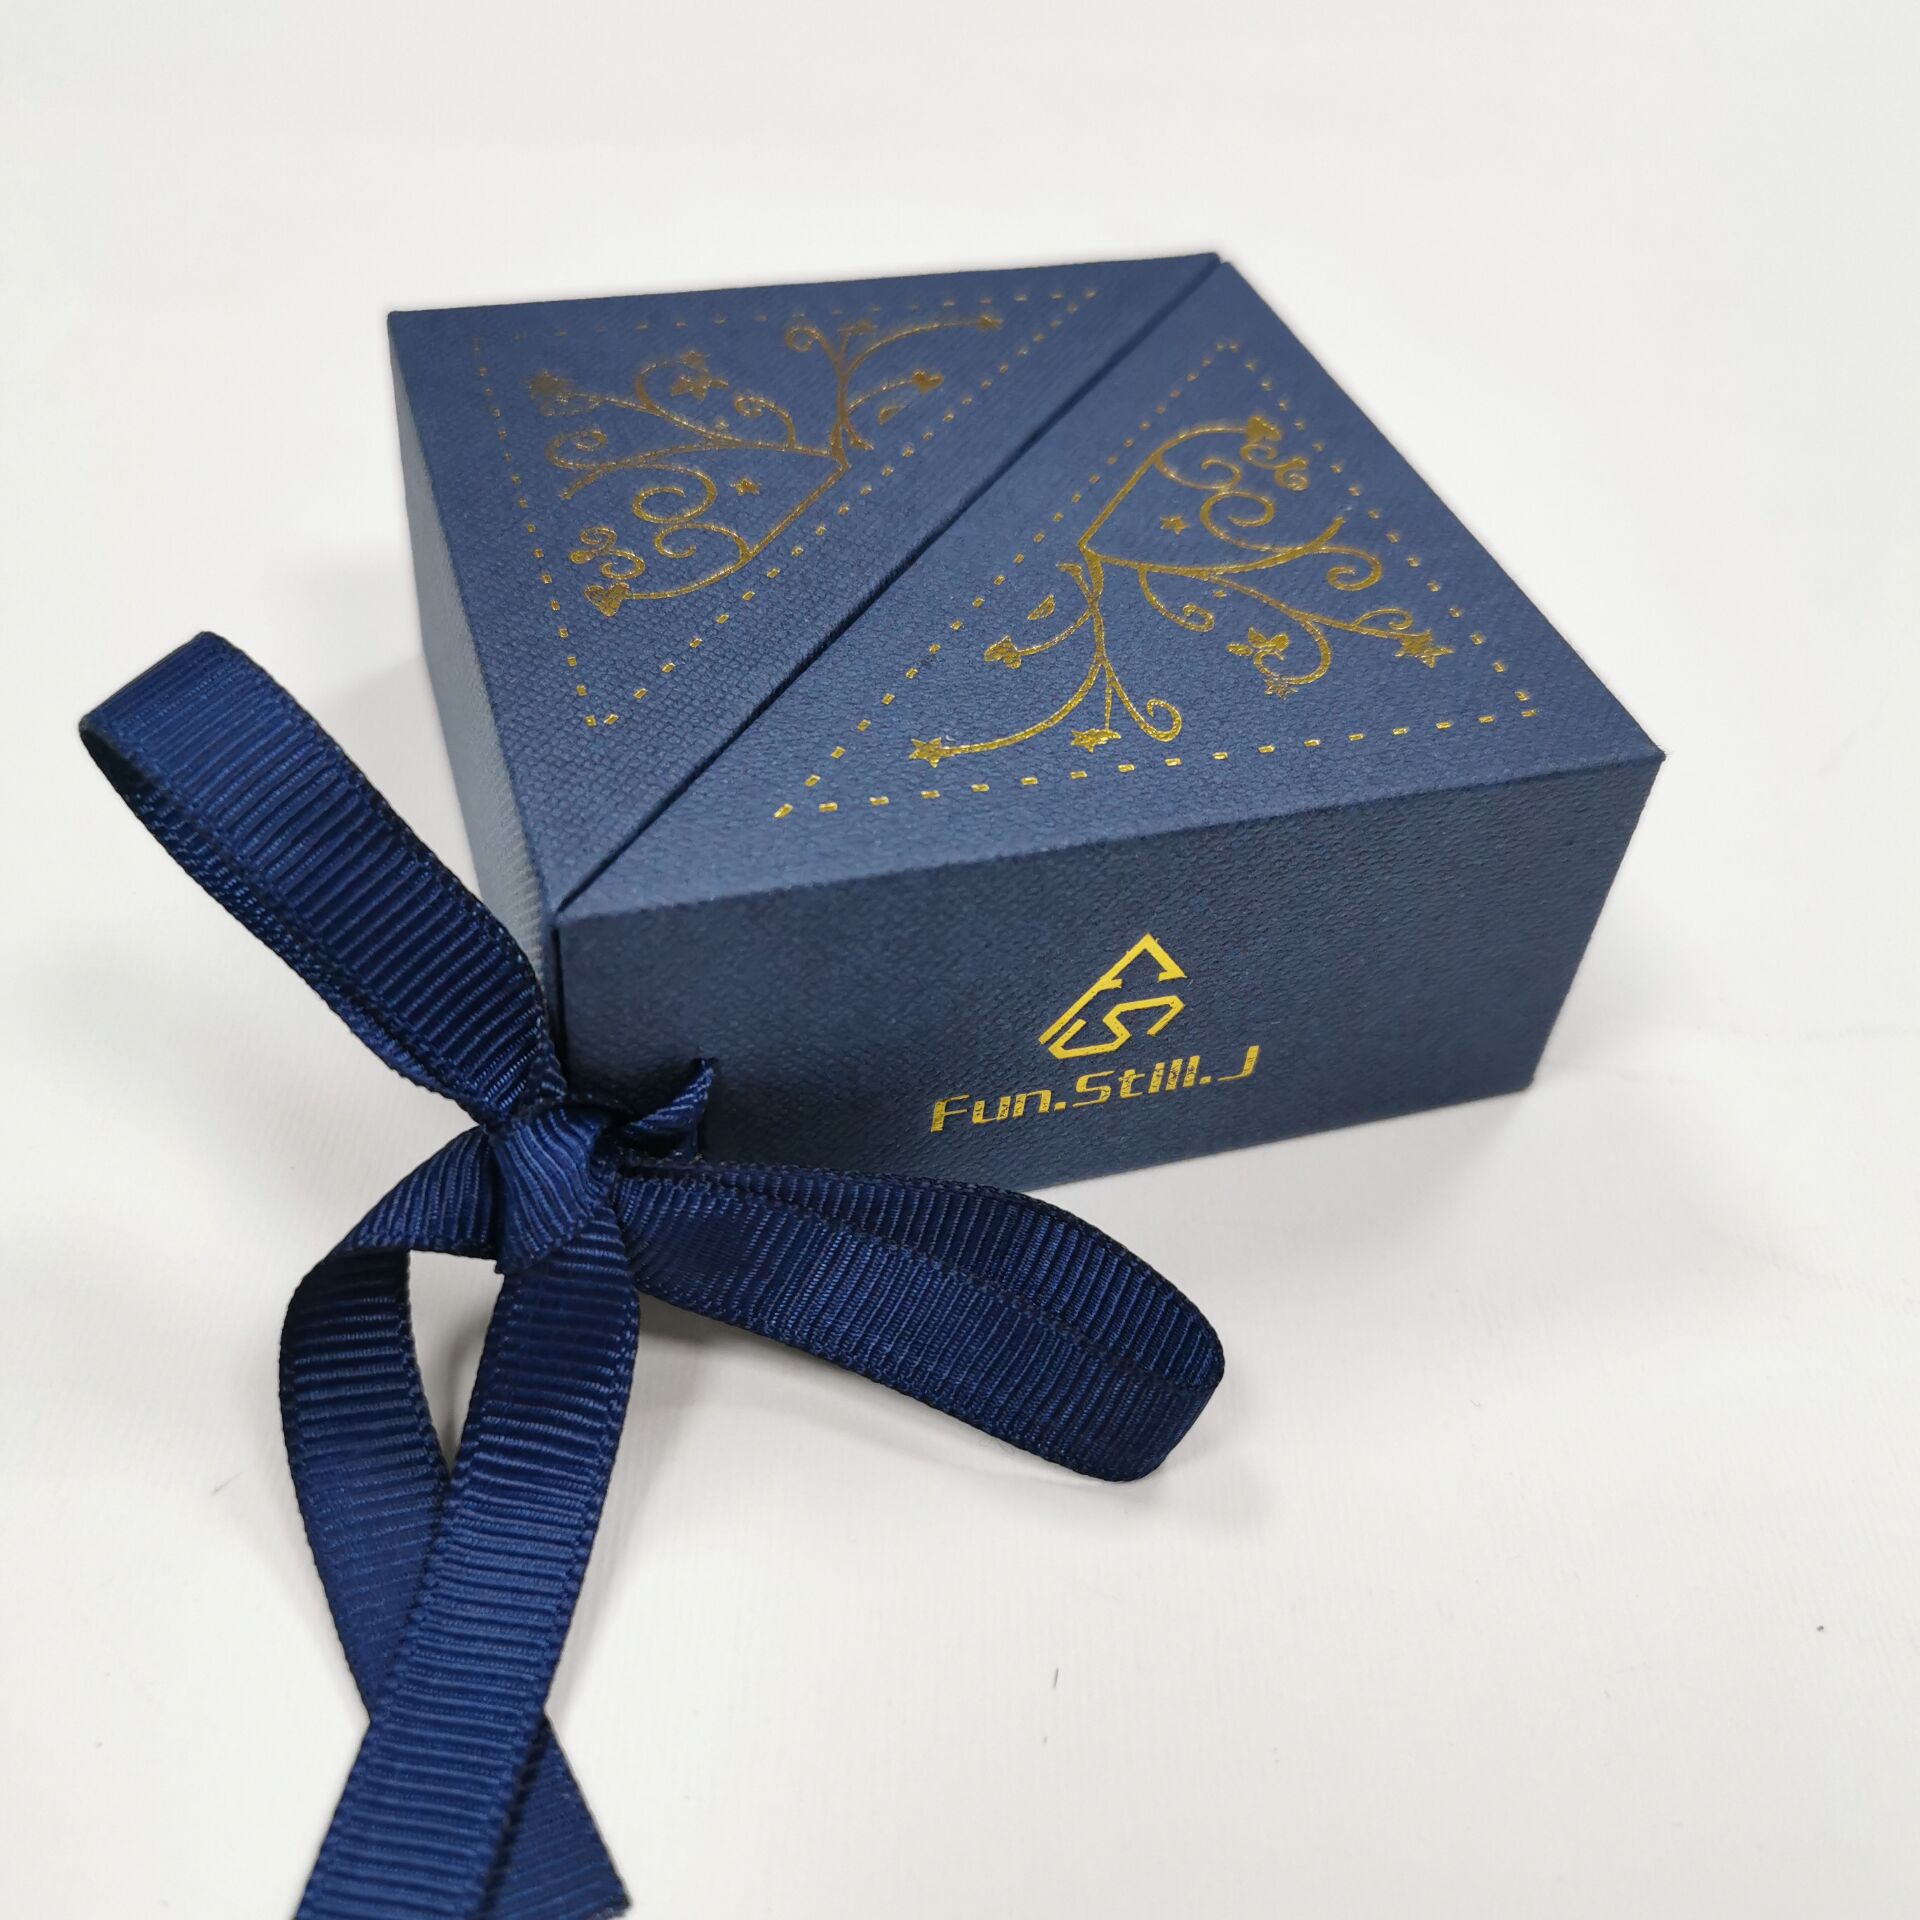 Yadao personalizar caixa de papel de esponja azul com fita